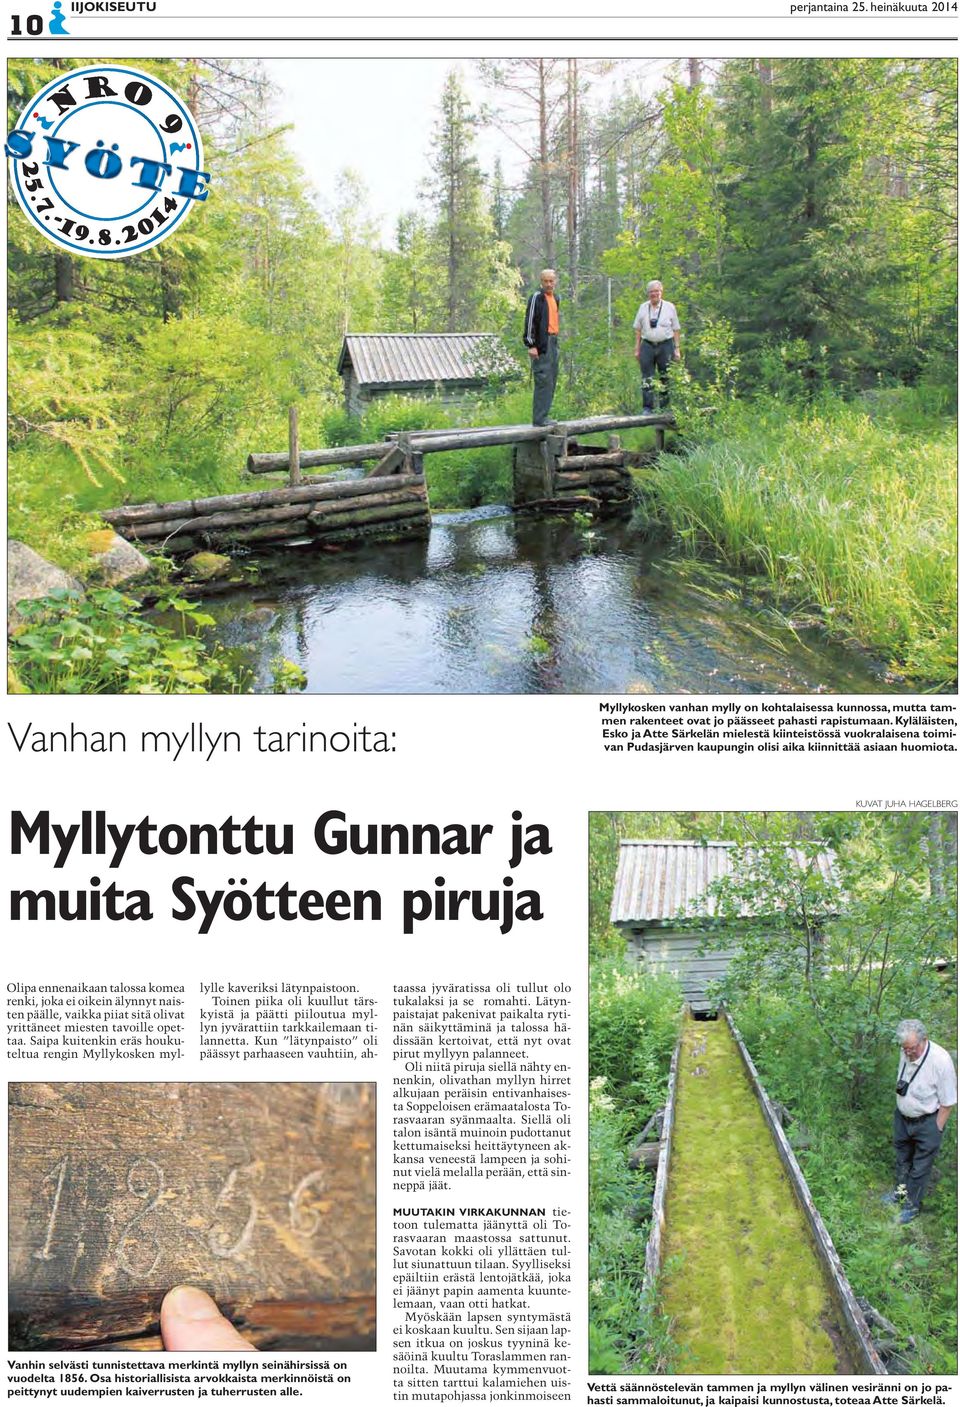 Kyläläisten, Esko ja Atte Särkelän mielestä kiinteistössä vuokralaisena toimivan Pudasjärven kaupungin olisi aika kiinnittää asiaan huomiota.